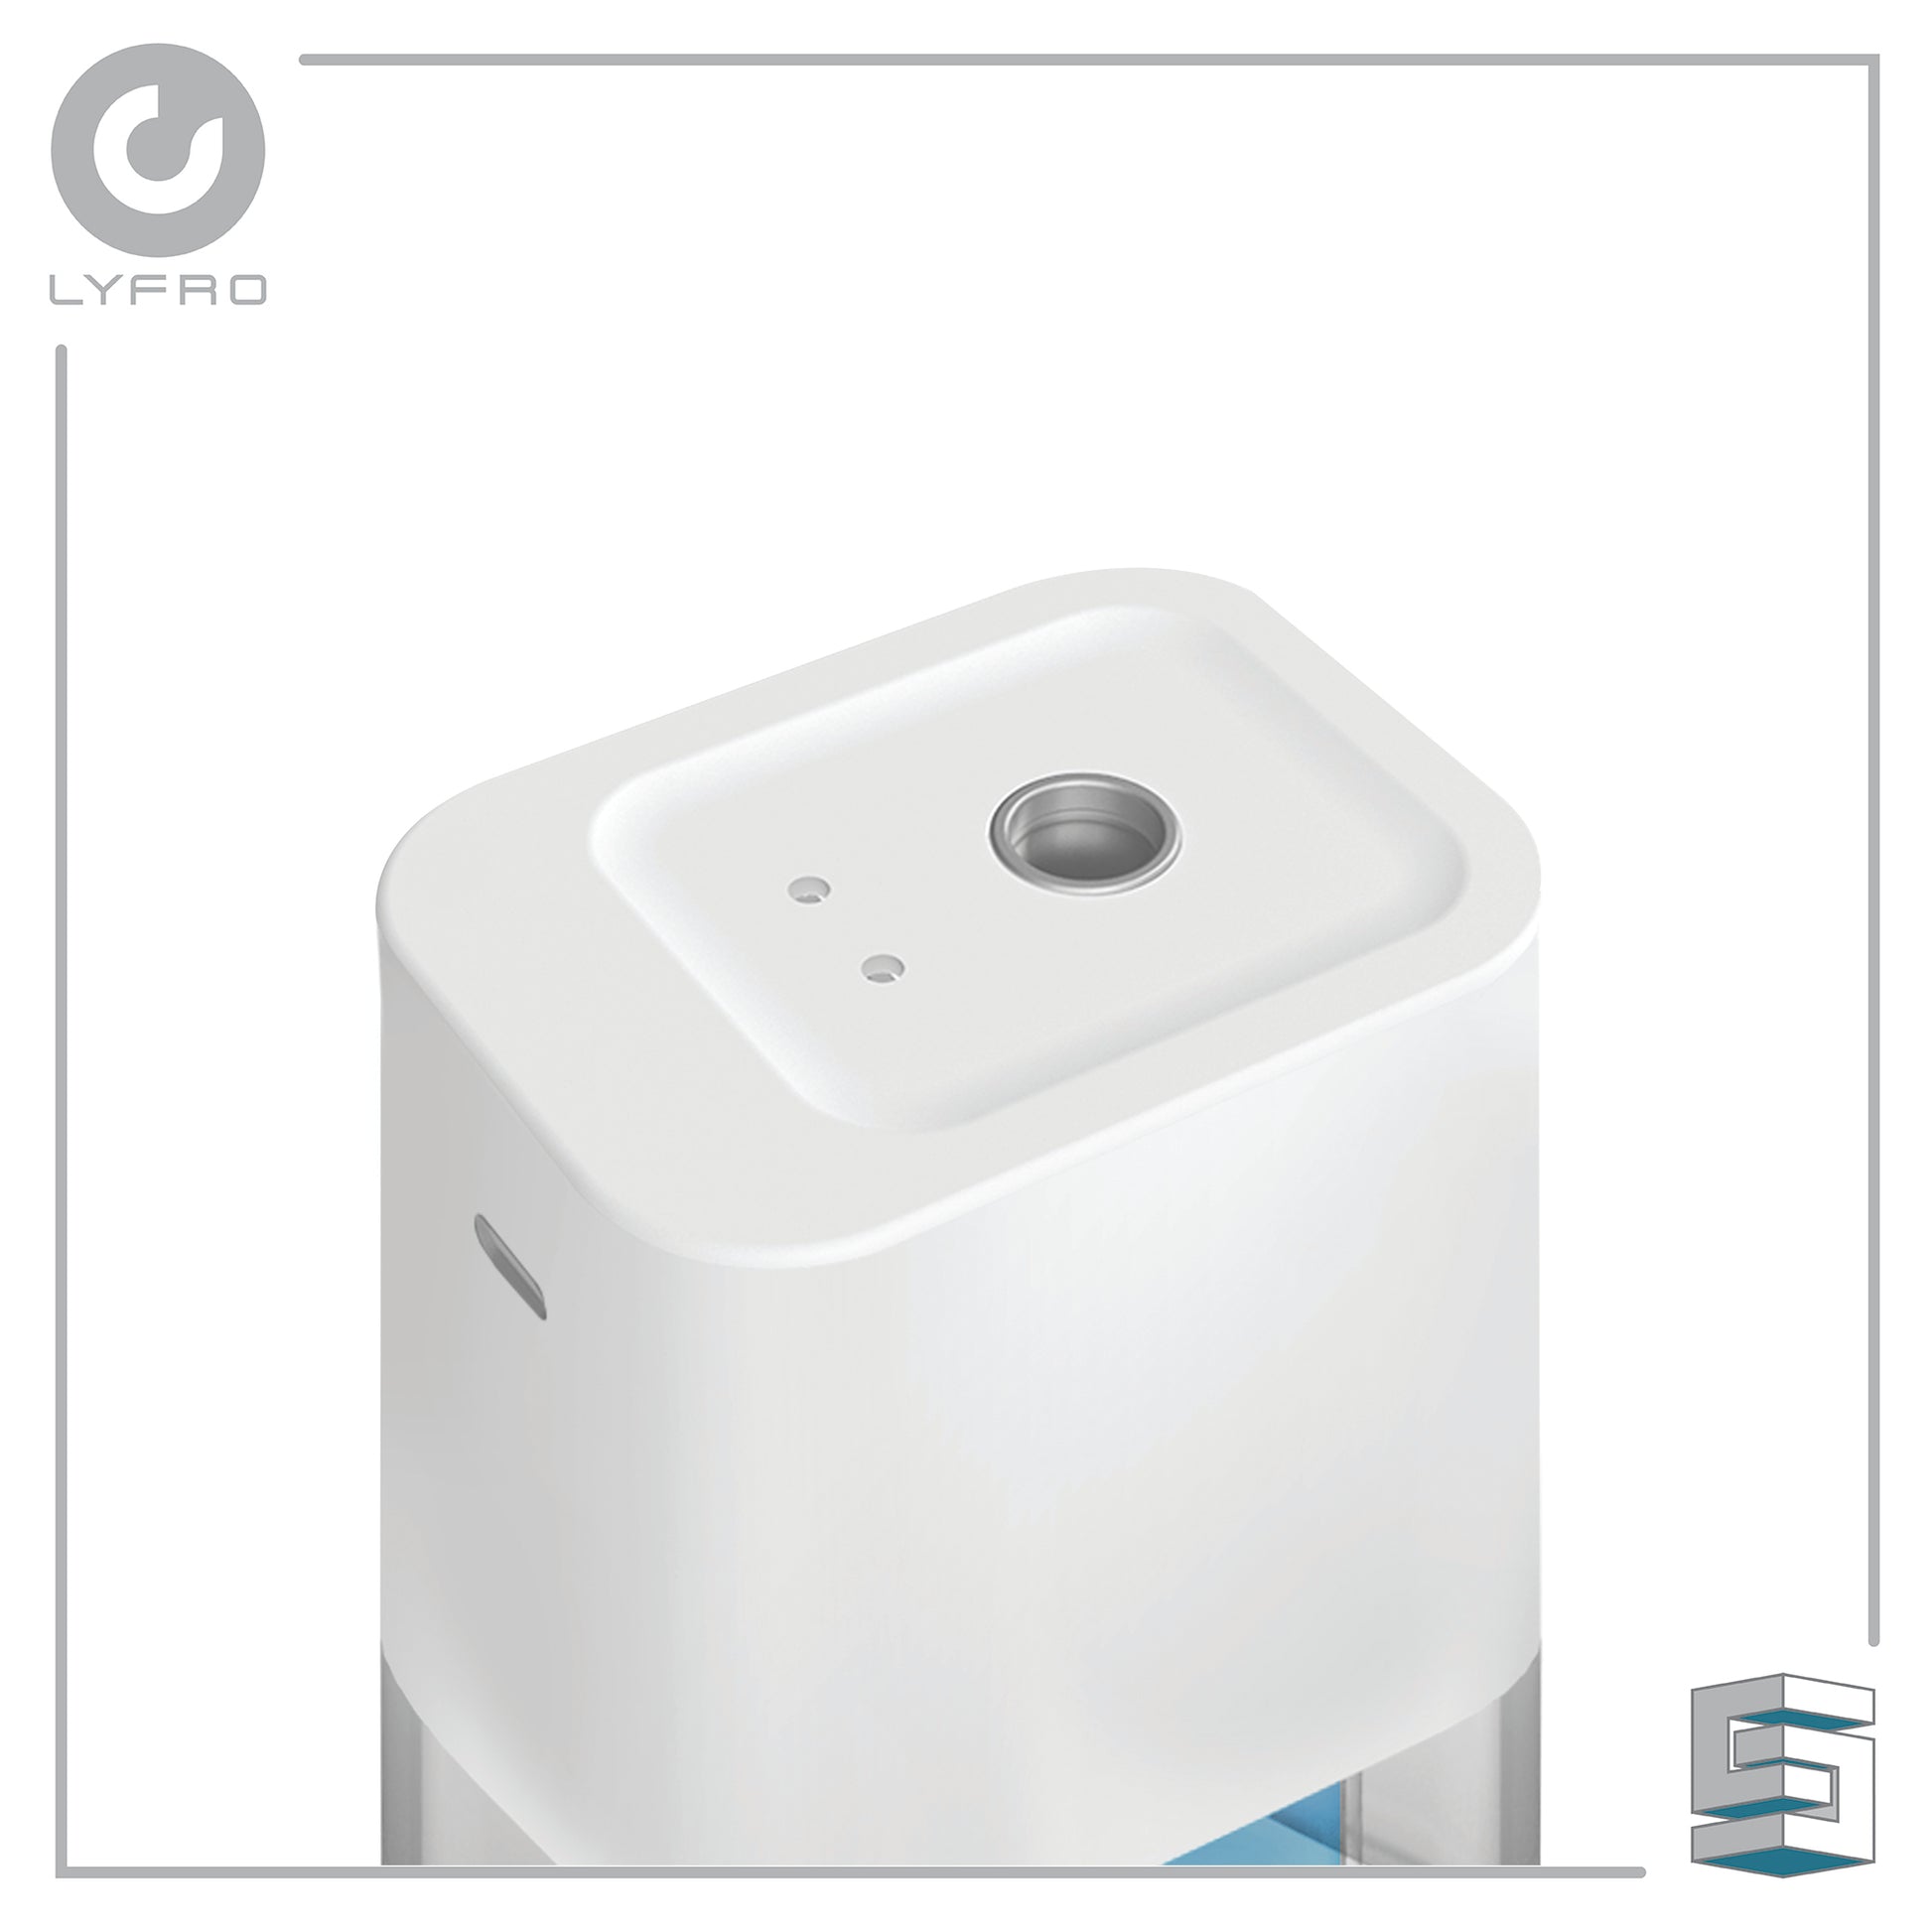 Portable Smart Sanitising Mist Dispenser - LYFRO Flow Global Synergy Concepts